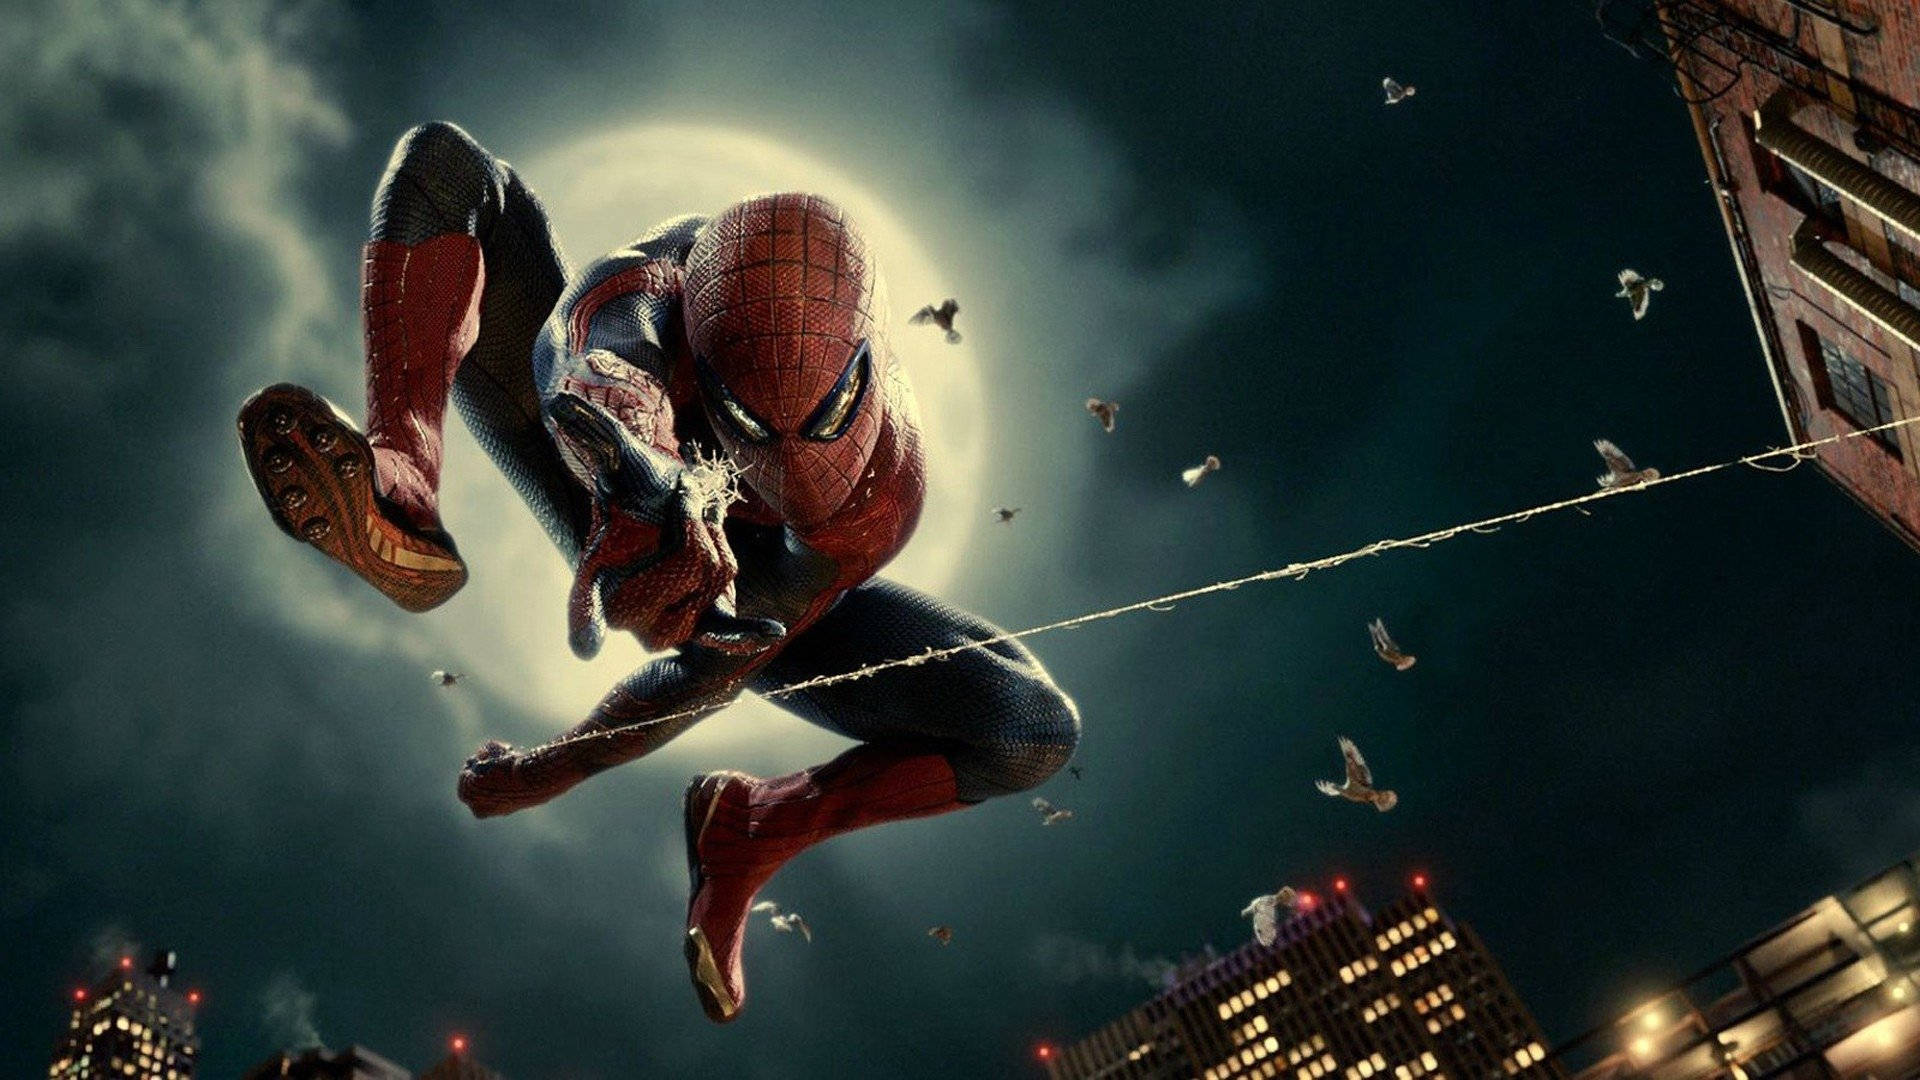 Peterparker Se Enfrenta A Villanos Como El Asombroso Spider-man. Fondo de pantalla